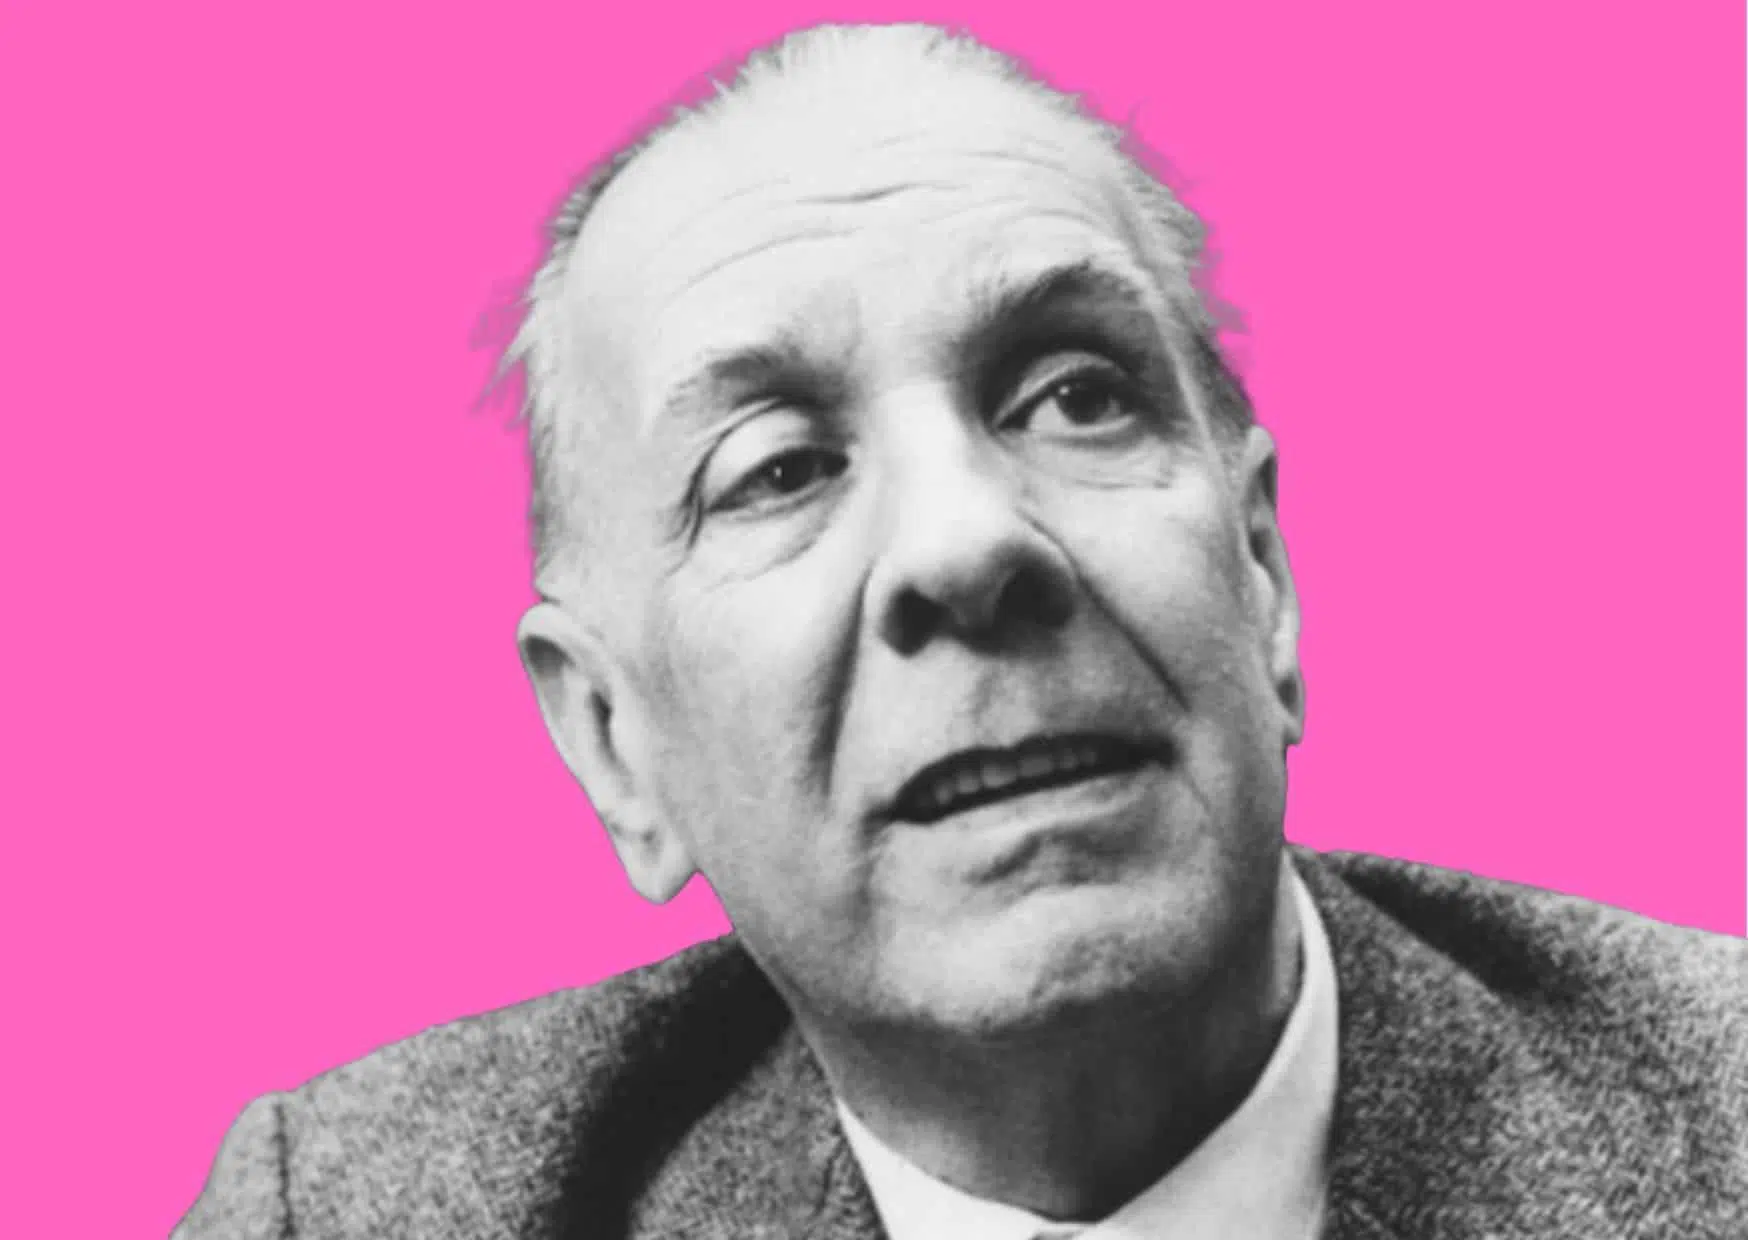 Cuentos completos de Jorge Luis Borges